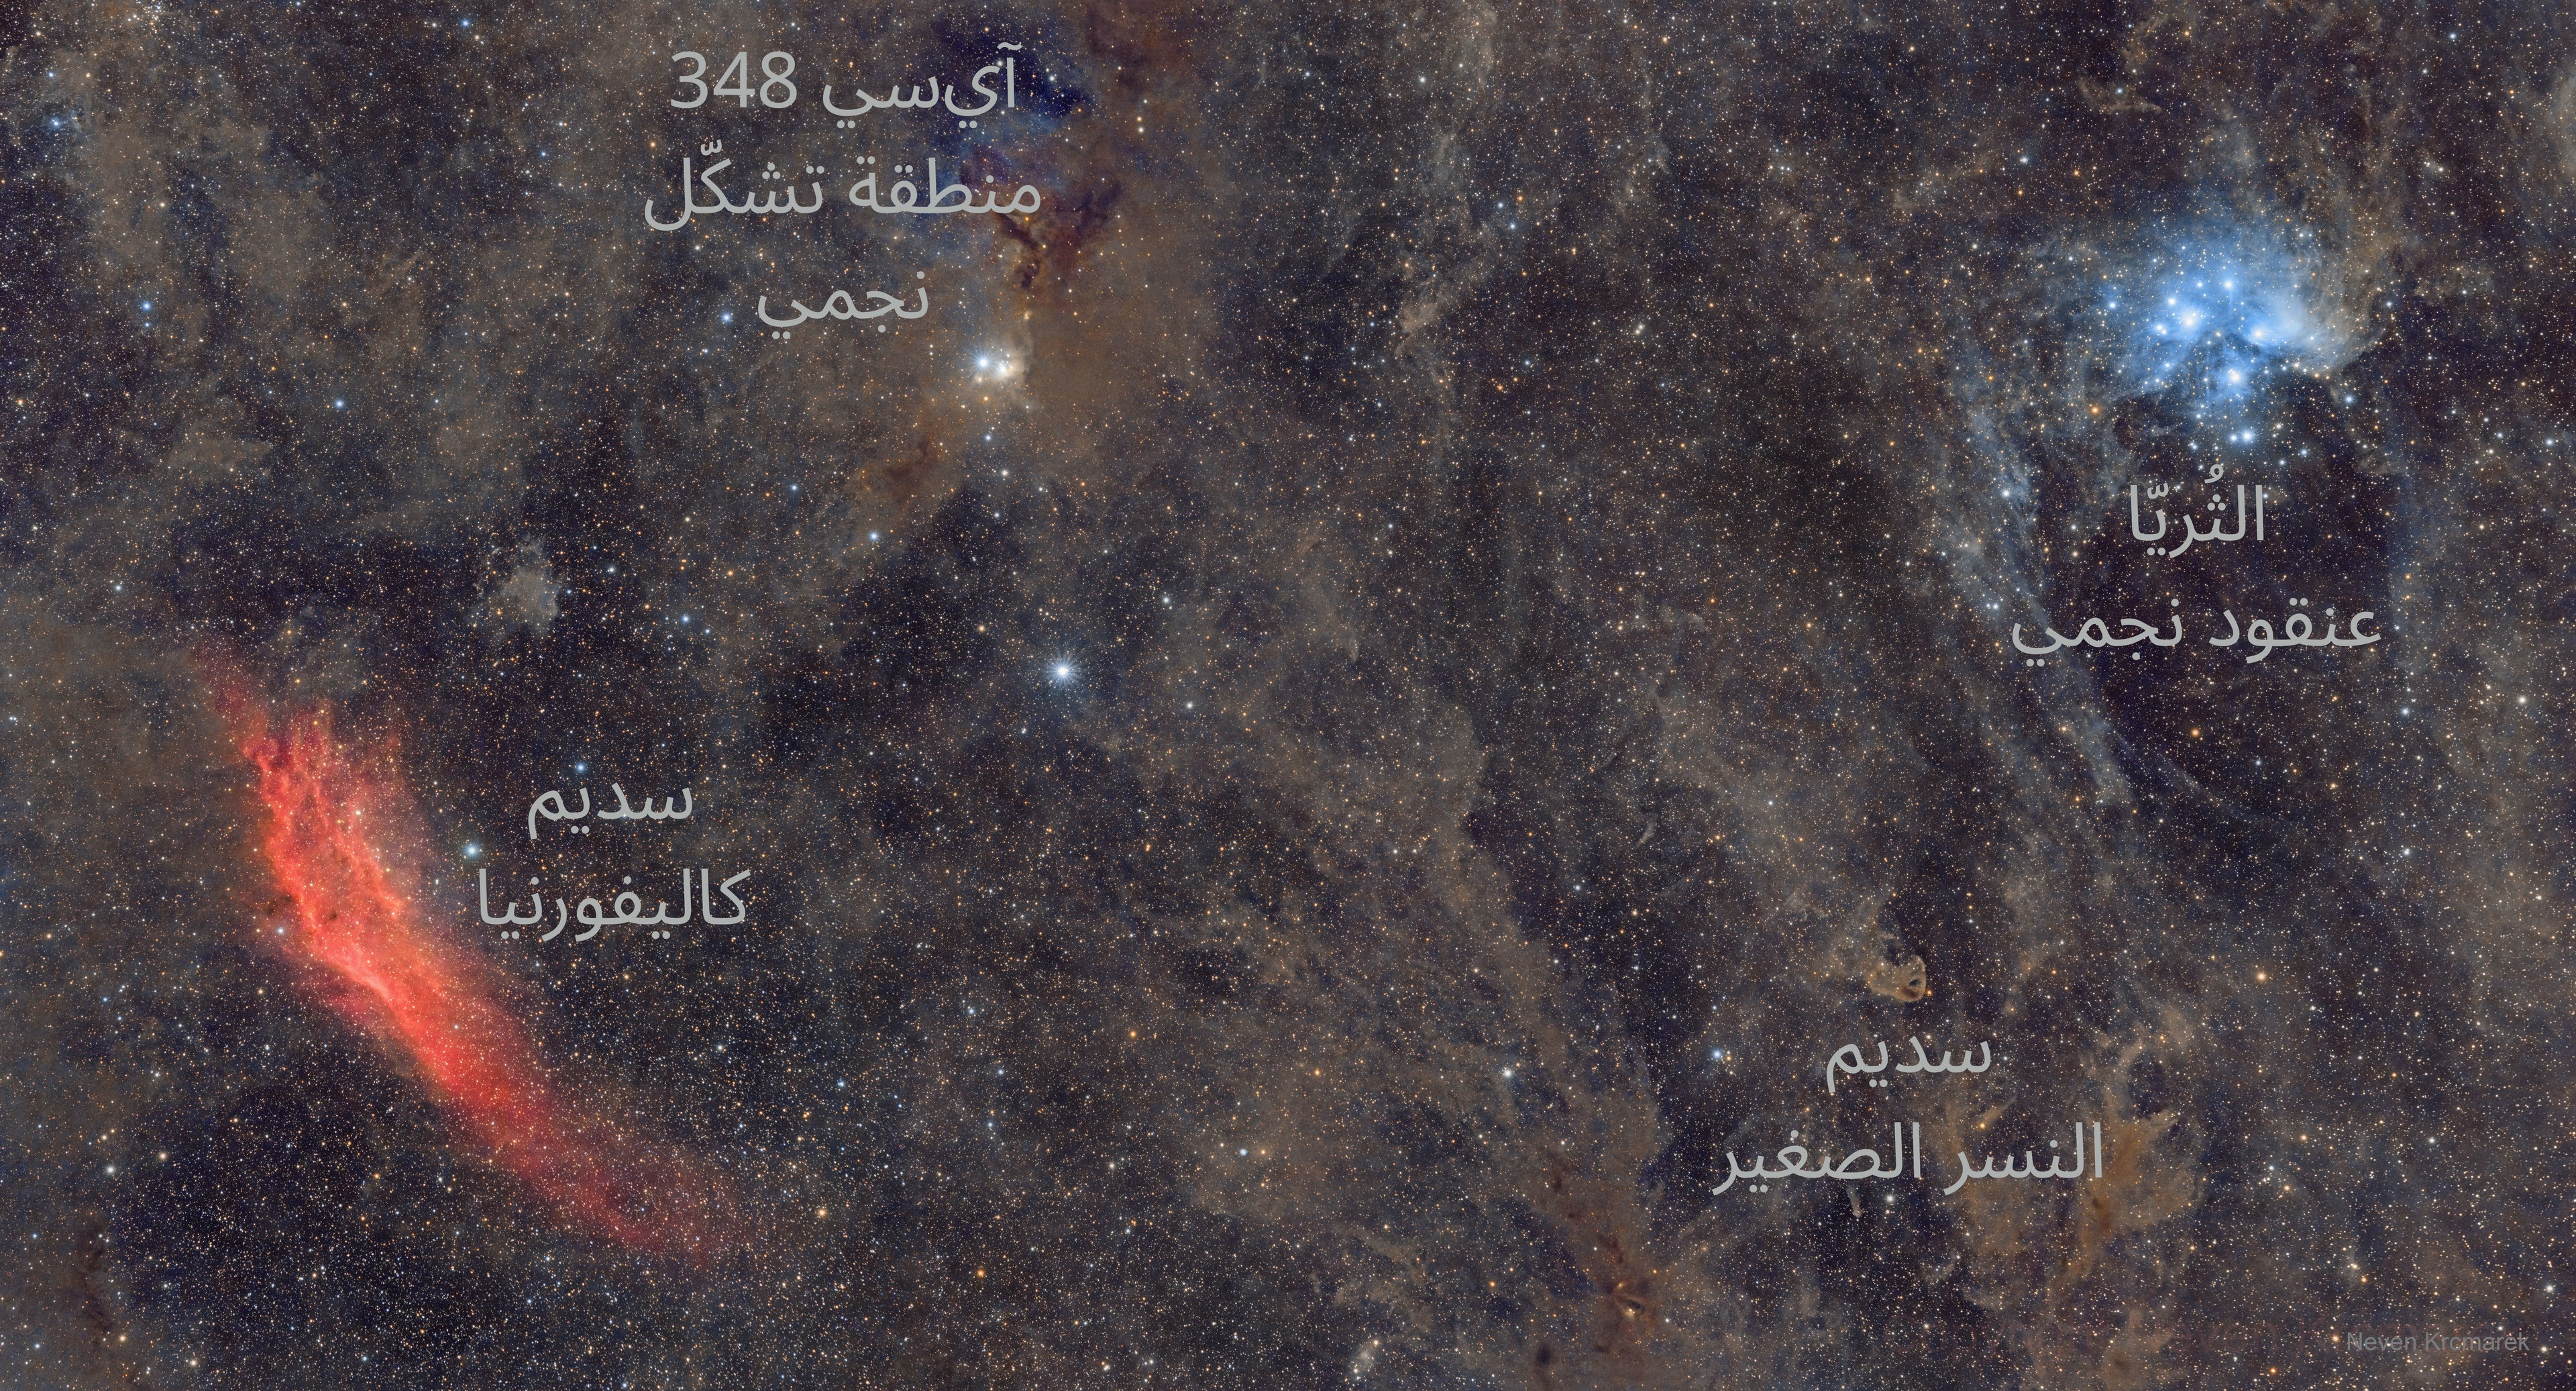 نسخة معنونة من الصورة وضح عليها كل من عنقود الثُريّا النجمي ومنطقة تشكّل النجوم "آي‌سي 348"وسديما كاليفورنيا والنسر الصغير